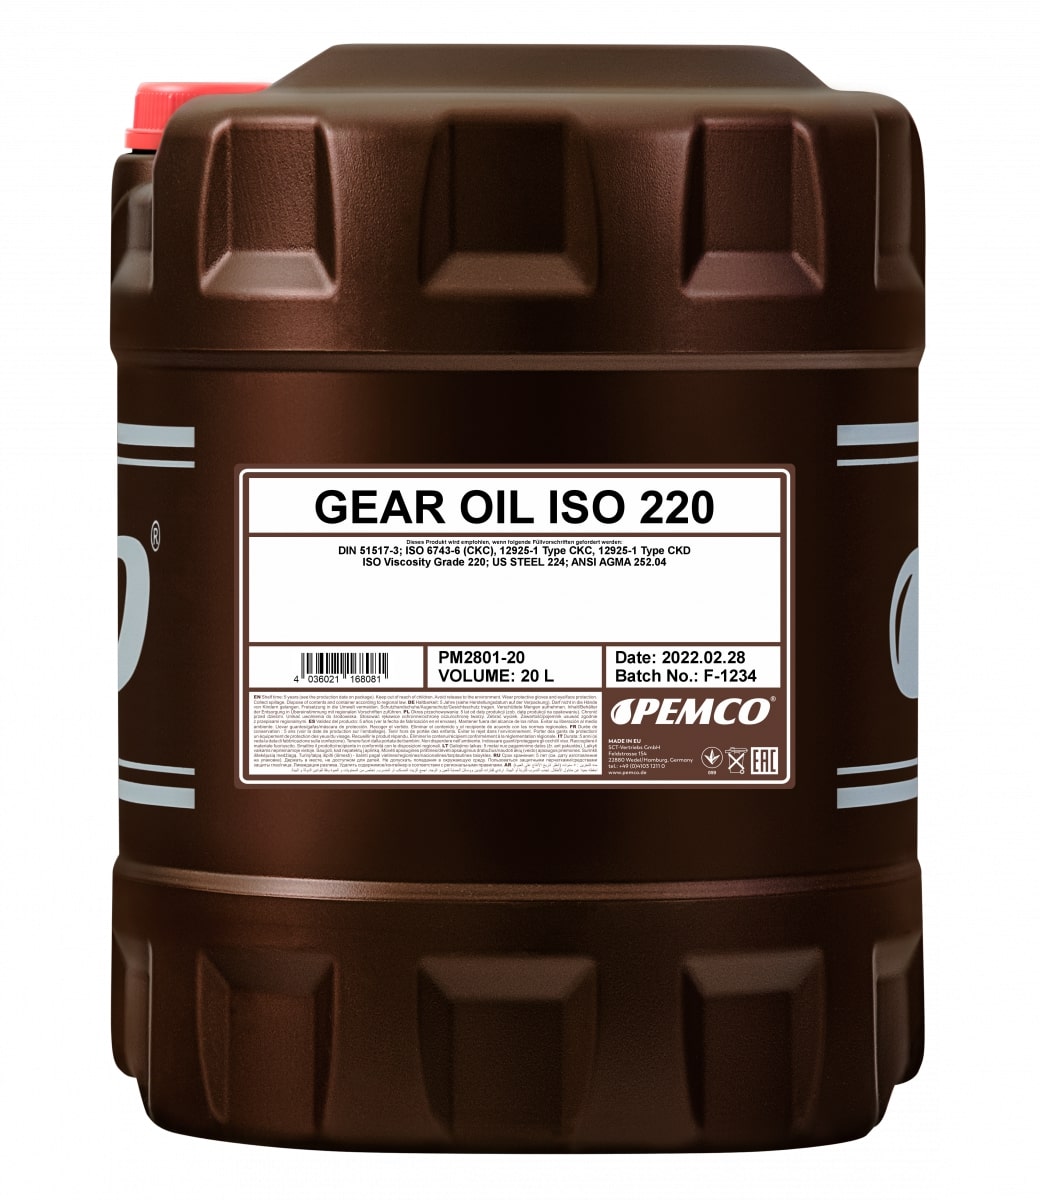  PEMCO Gear Oil ISO 220